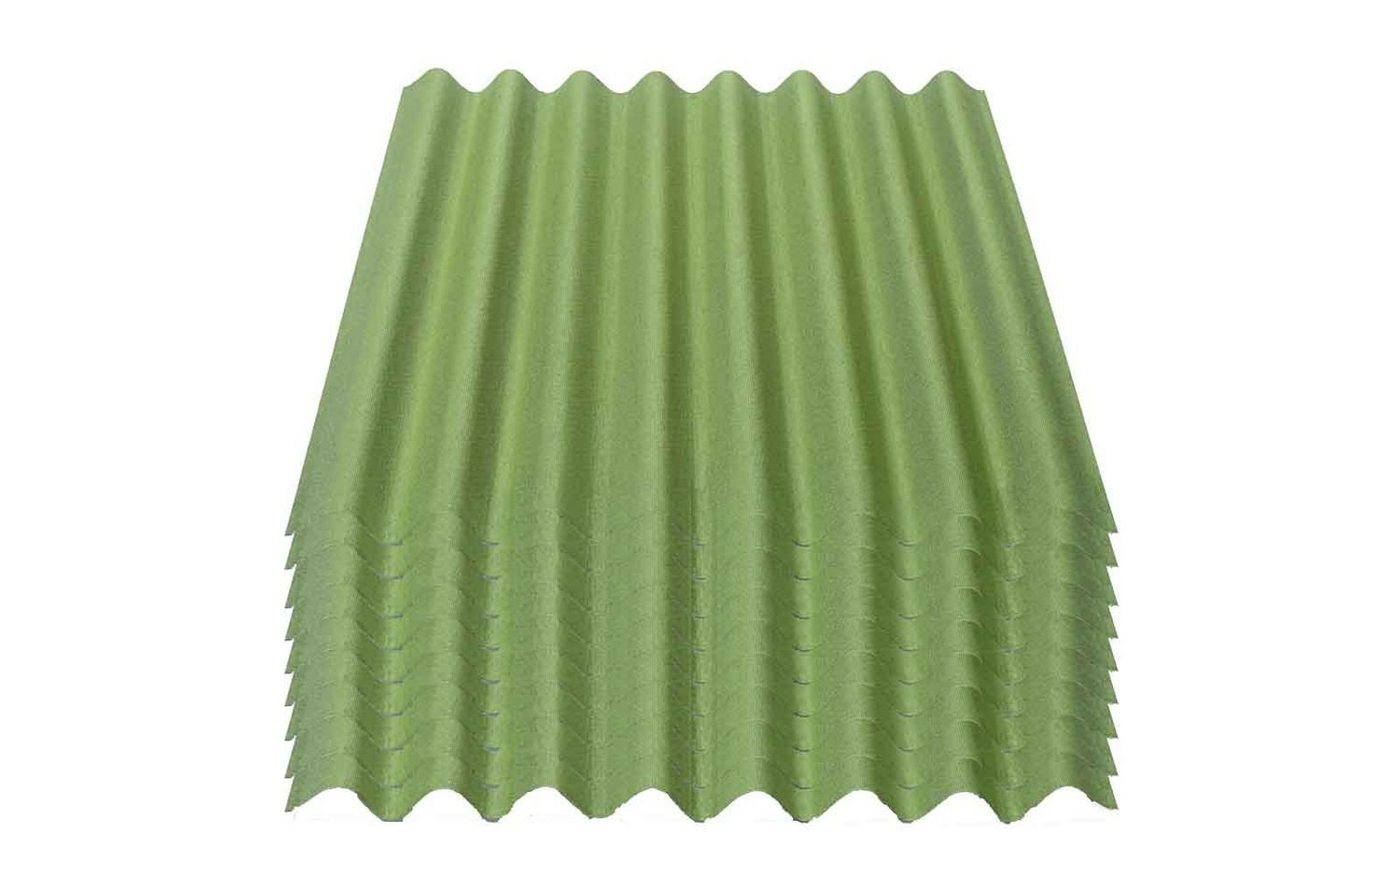 Onduline Dachpappe Onduline Easyline Dachplatte Wandplatte Bitumenwellplatten Wellplatte 9x0,76m² - grün, wellig, 6.84 m² pro Paket, (9-St) von Onduline